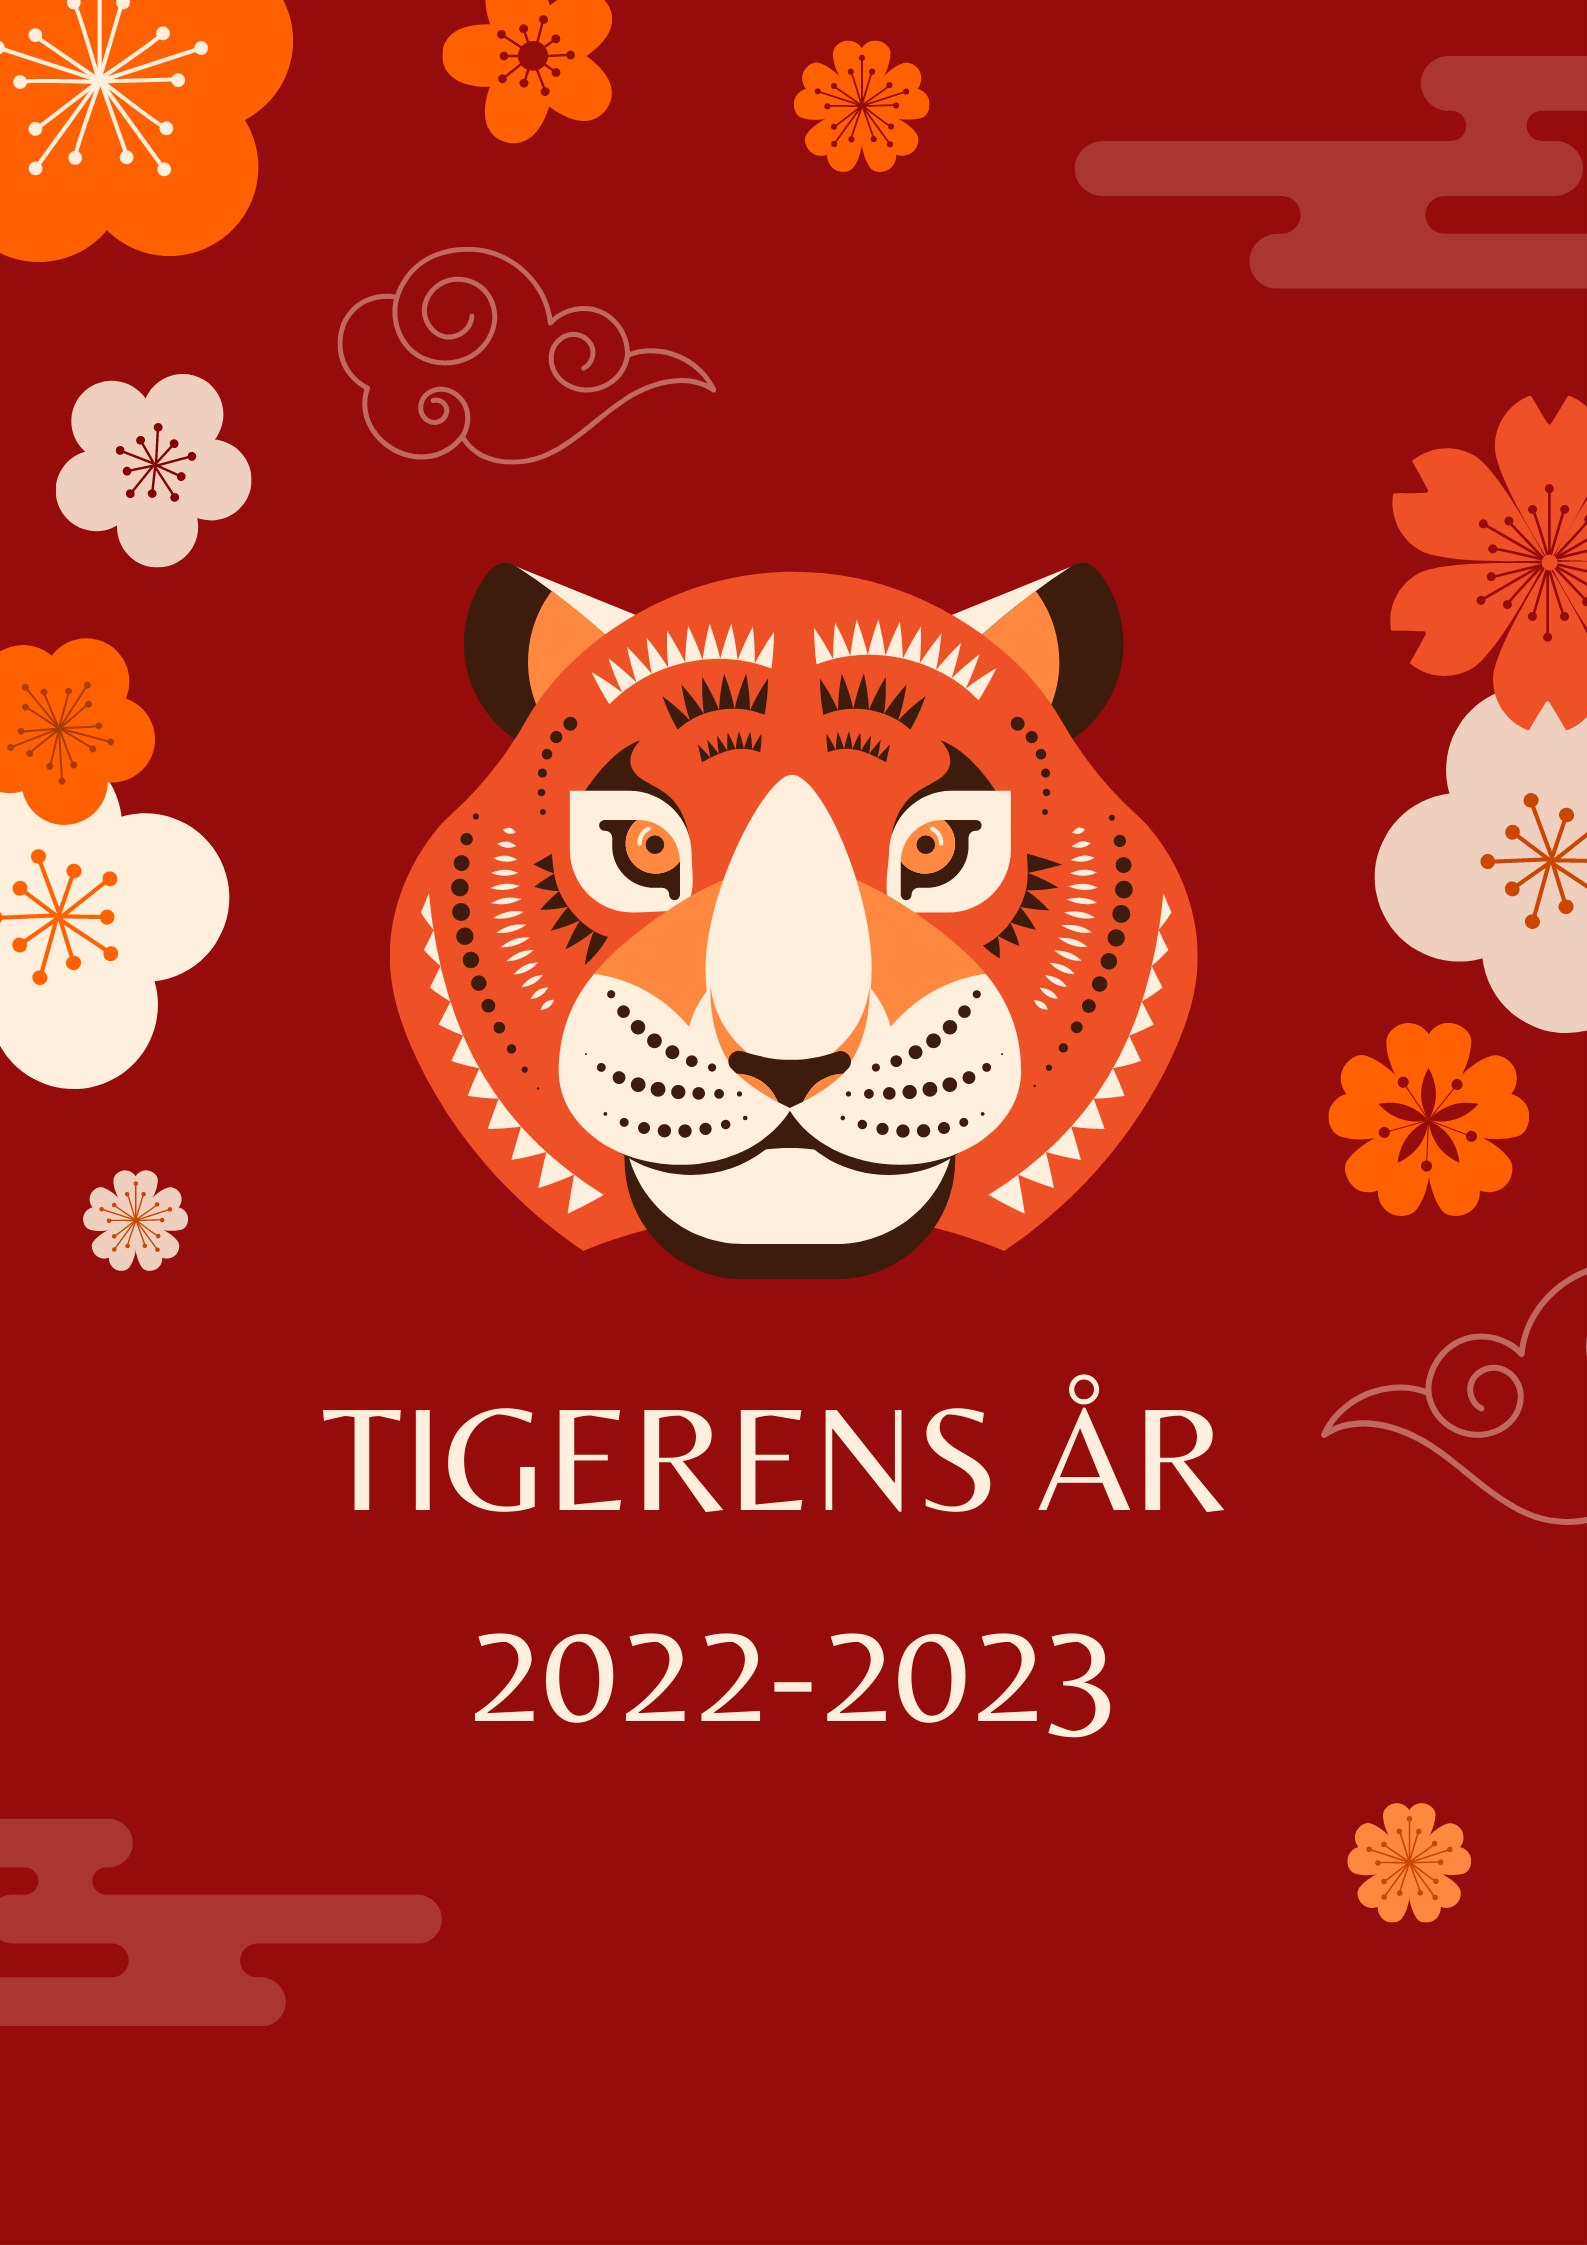 Tigerens år 2022-2023. Når livet skal leves fuldt ud.